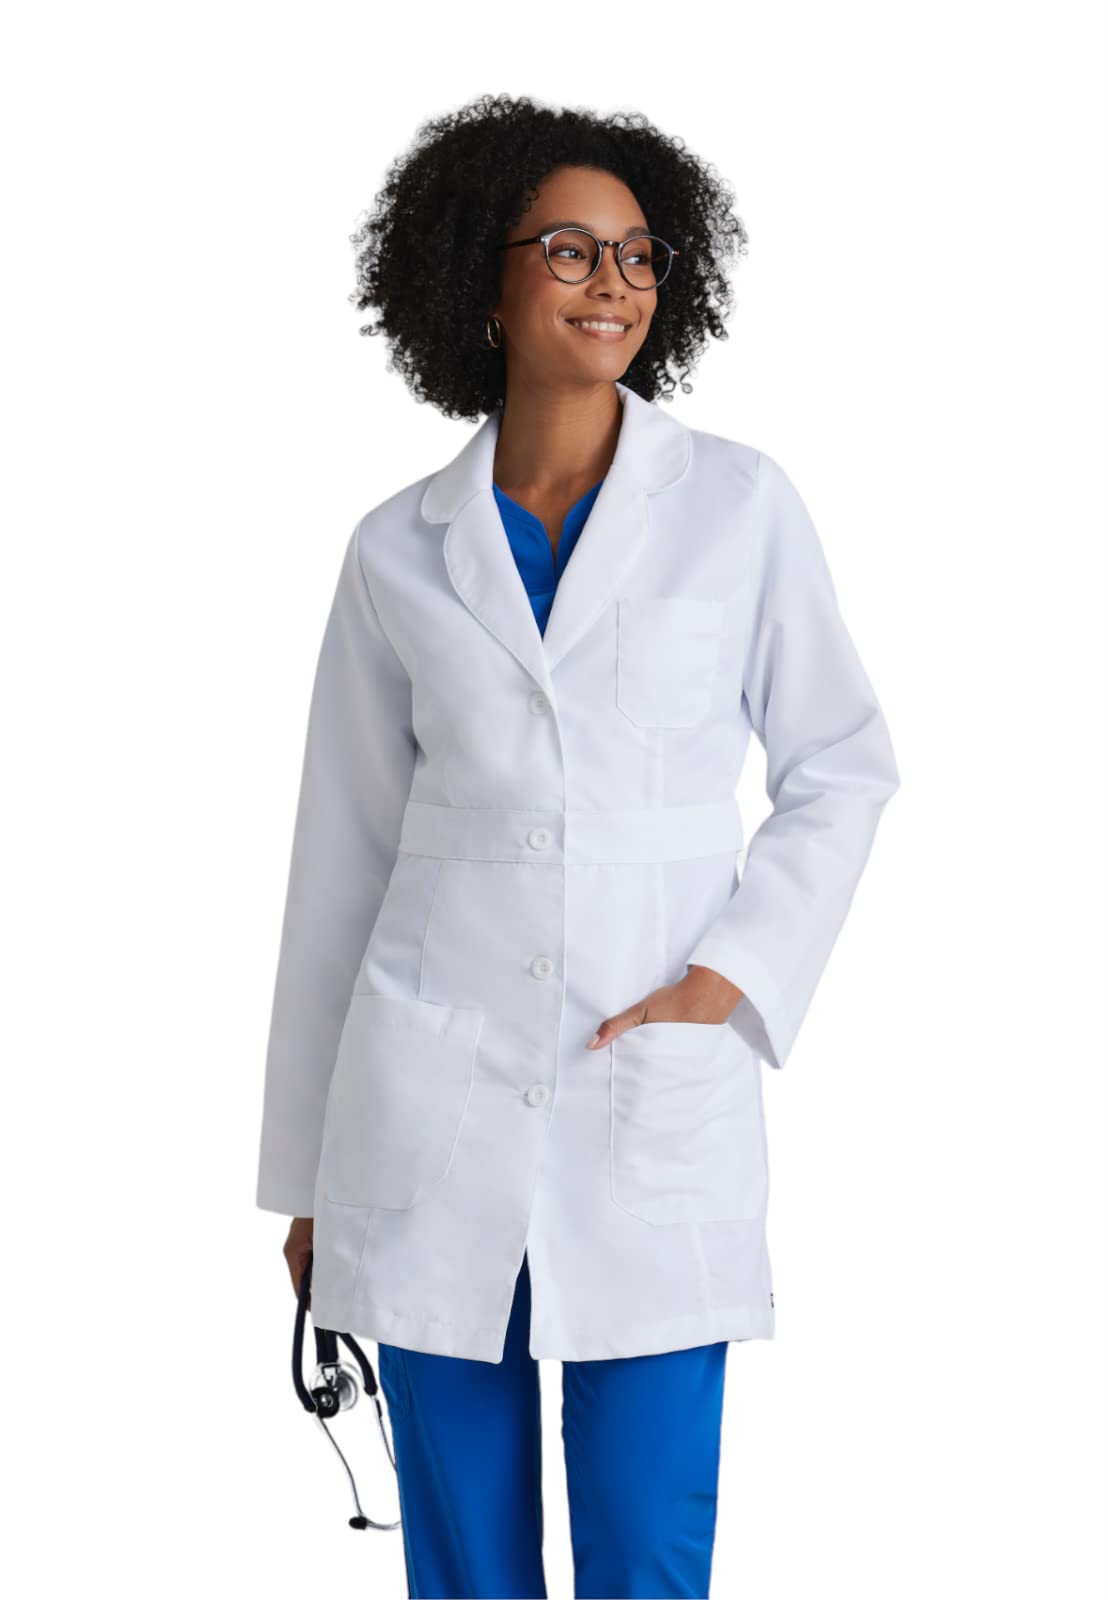 Grey's Anatomy Women's 4481 34 inch 3 Pocket Lab Coat